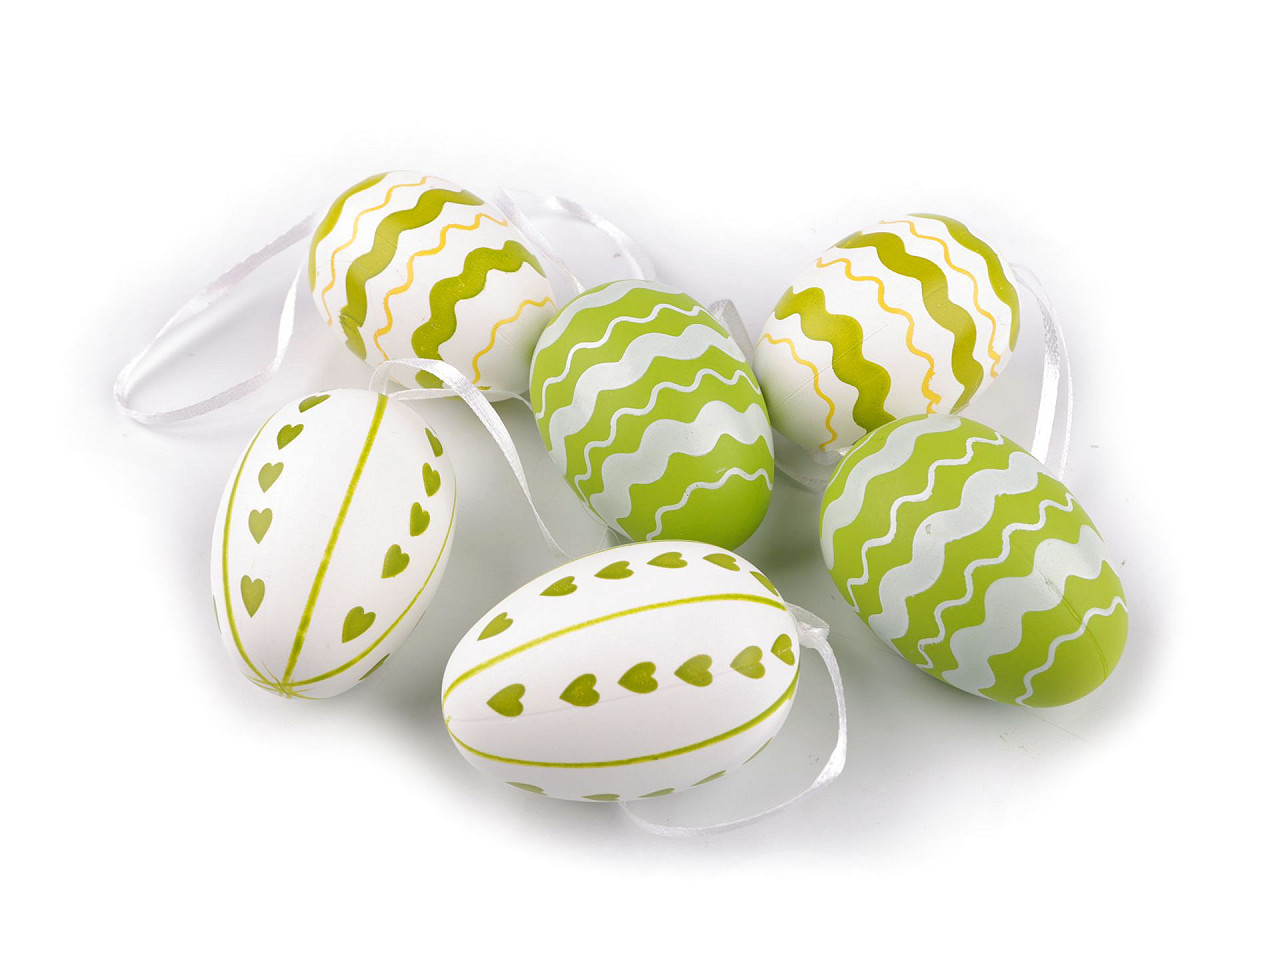 Velikonoční vajíčka k zavěšení, barva zelená sv. bílá